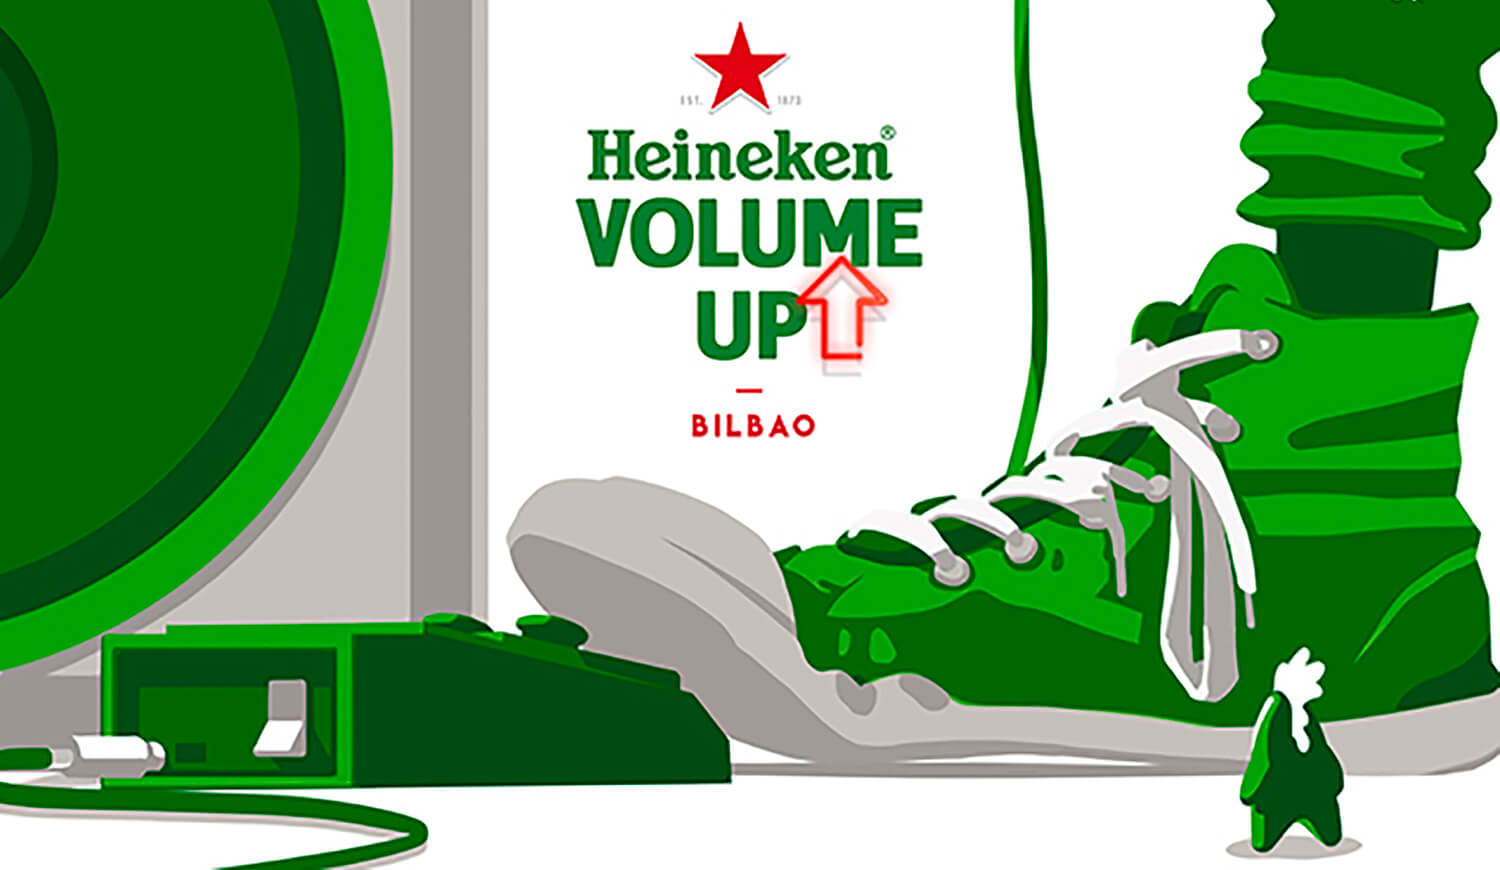 Heineken Volume Up